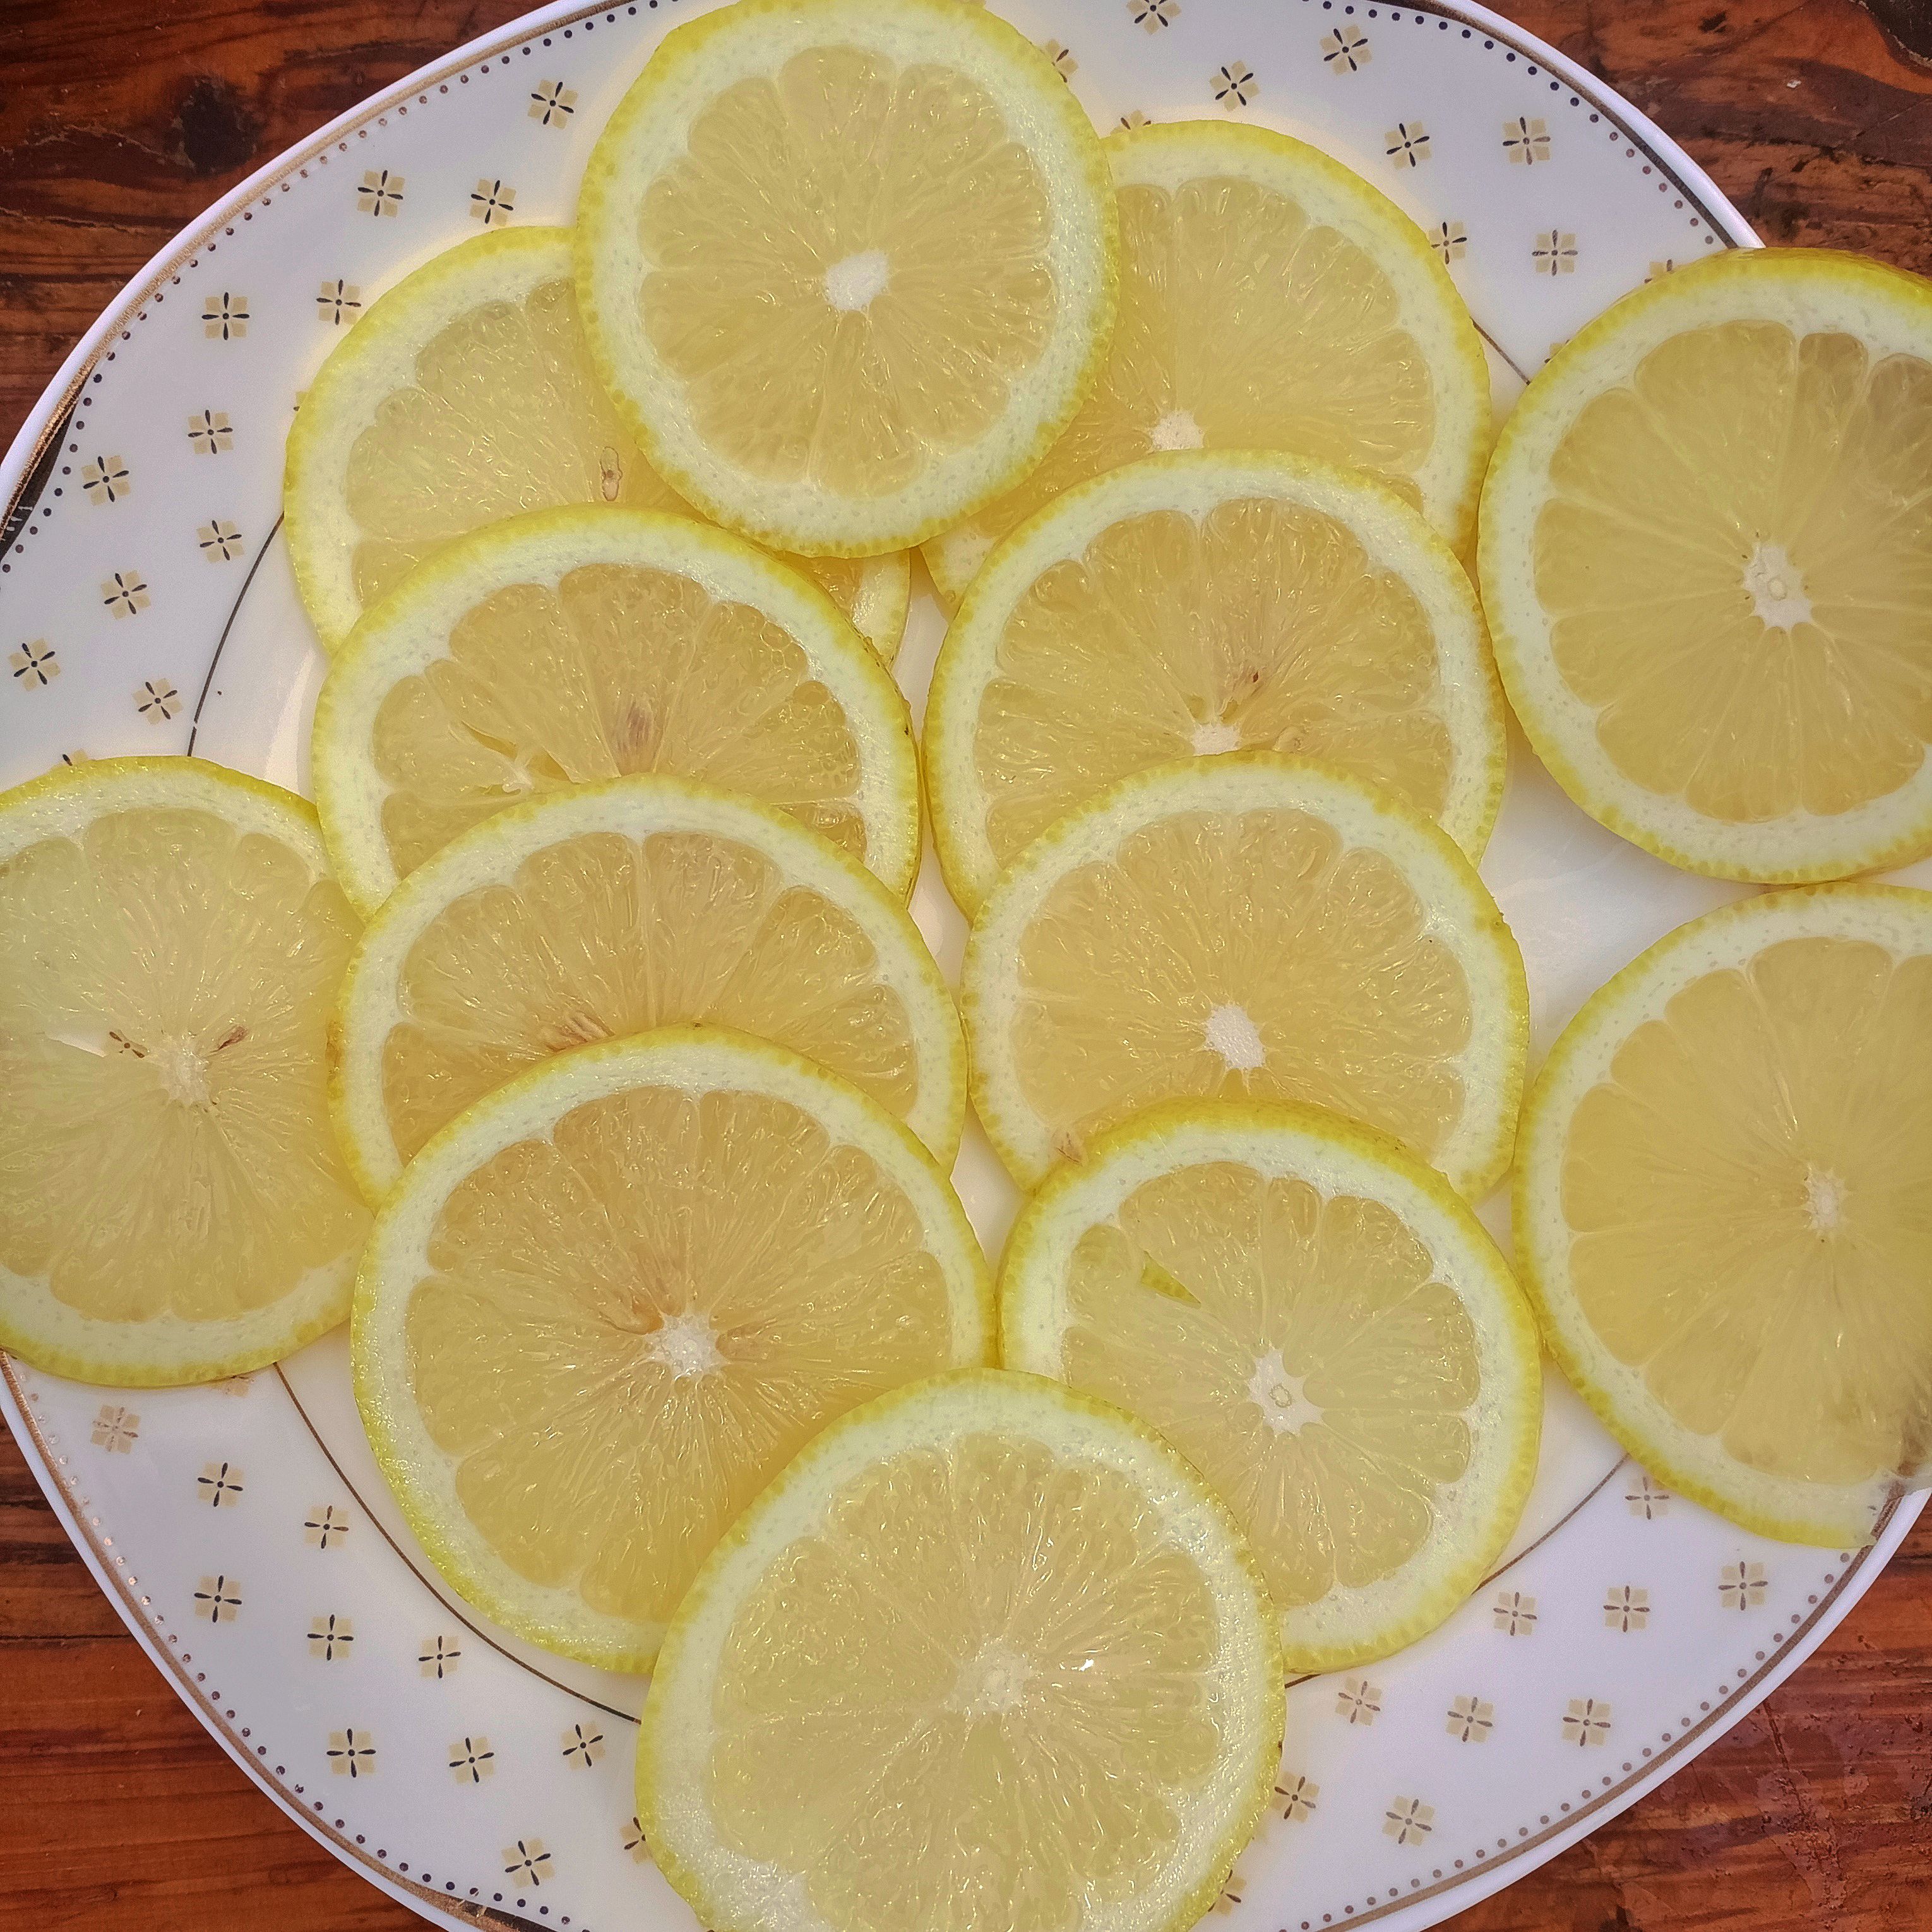 安岳柠檬 5斤9.9元 皮薄多汁包邮